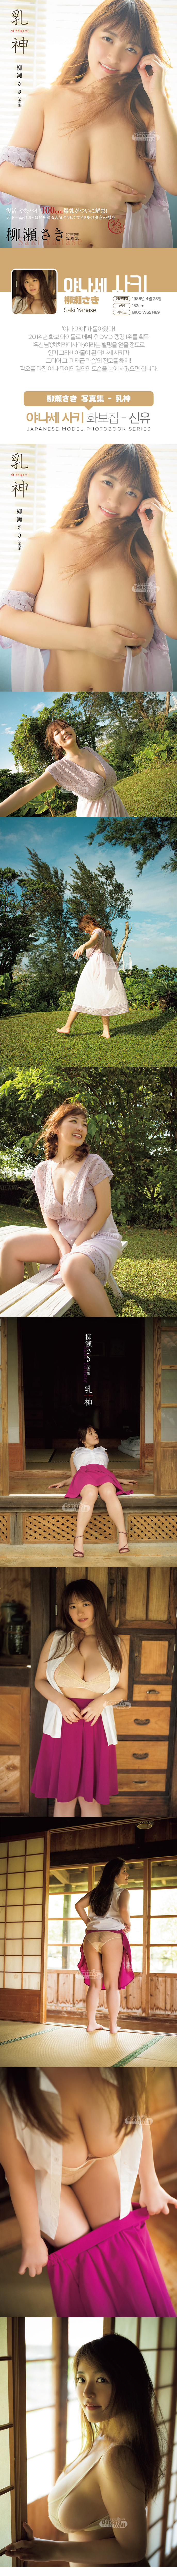 [일본 직수입] 야나세 사키 화보집 - 신유(柳瀬さき 写真集 - 乳神) - 후타바샤